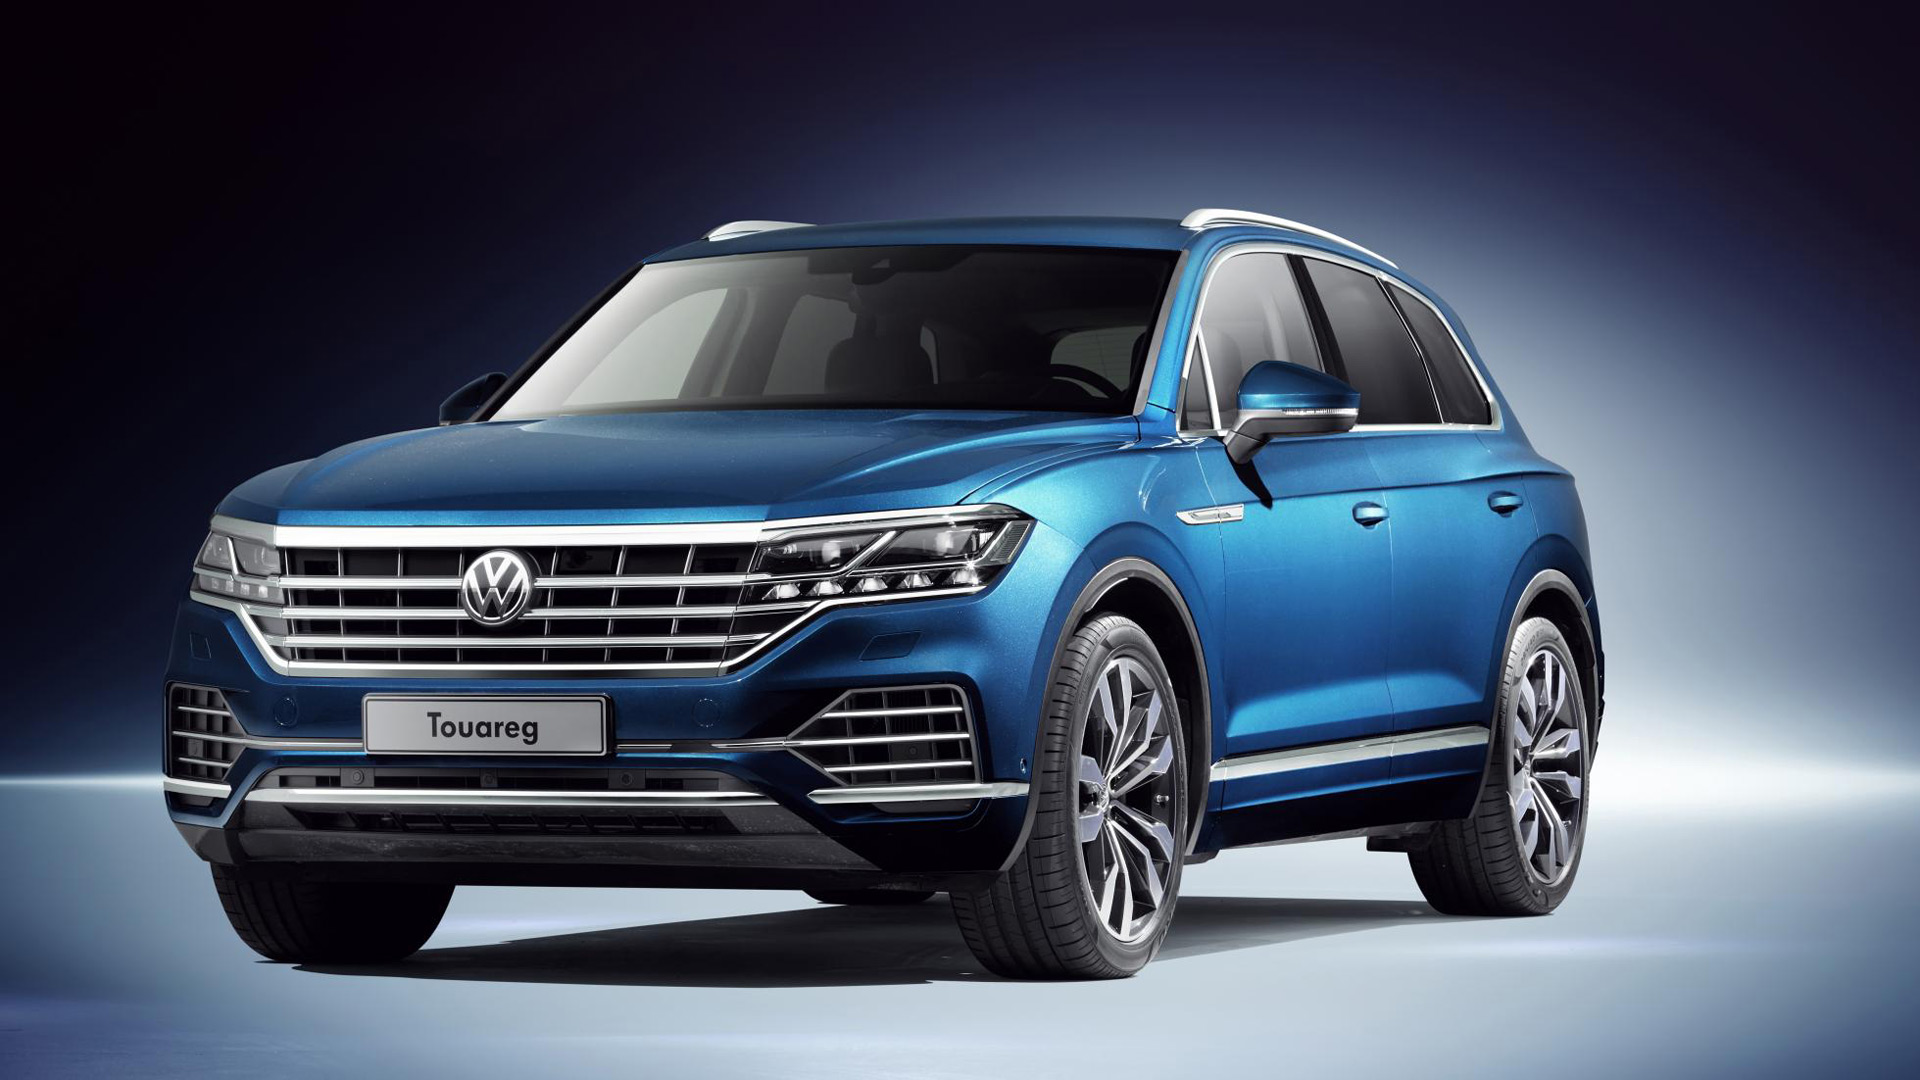 2018 Volkswagen Touareg revealed